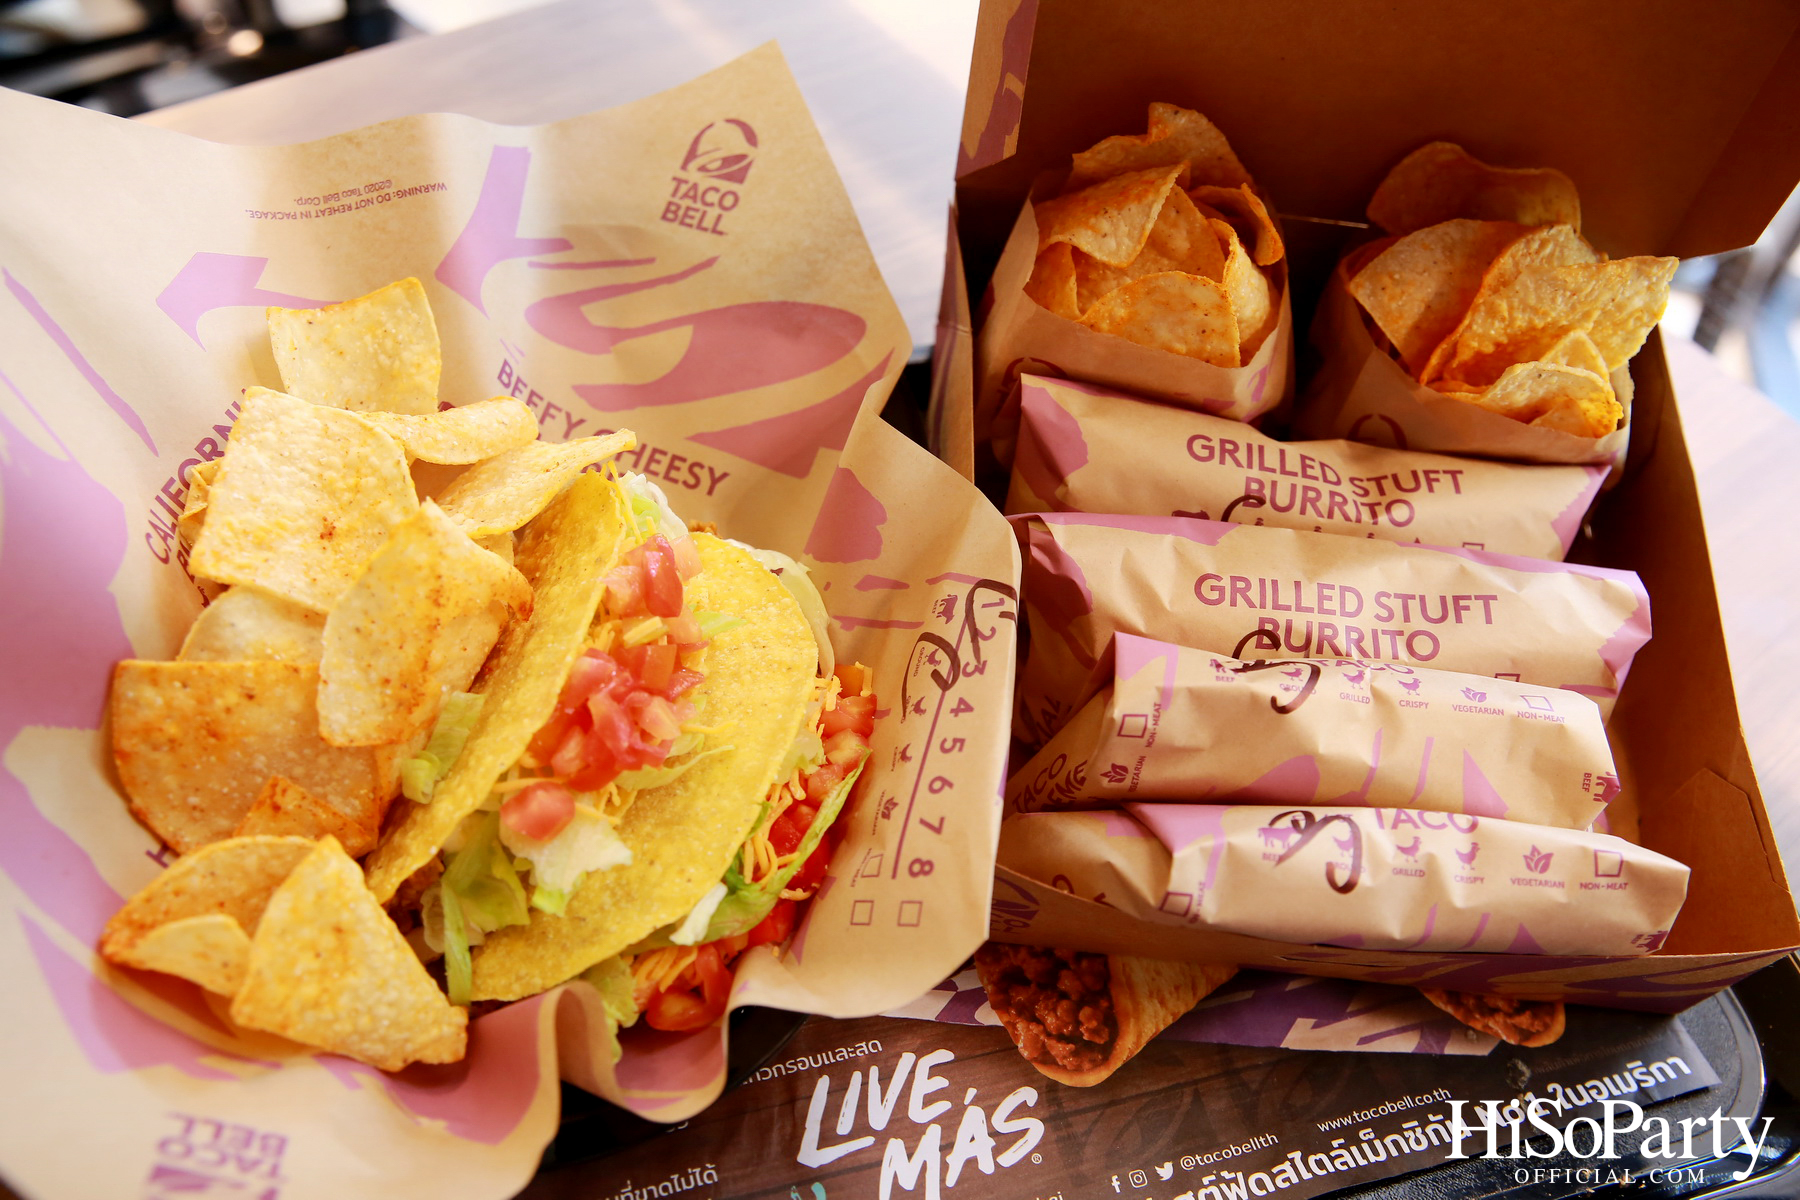 Taco Bell เปิดตัวสาขาใหม่ด้วยโมเดลตู้คอนเทนเนอร์เป็นครั้งแรก ณ ปั๊มบางจาก สาขารามอินทรา กม. 6.5 พร้อมแจกฟรี Crunchy Taco 1,000 ชิ้น